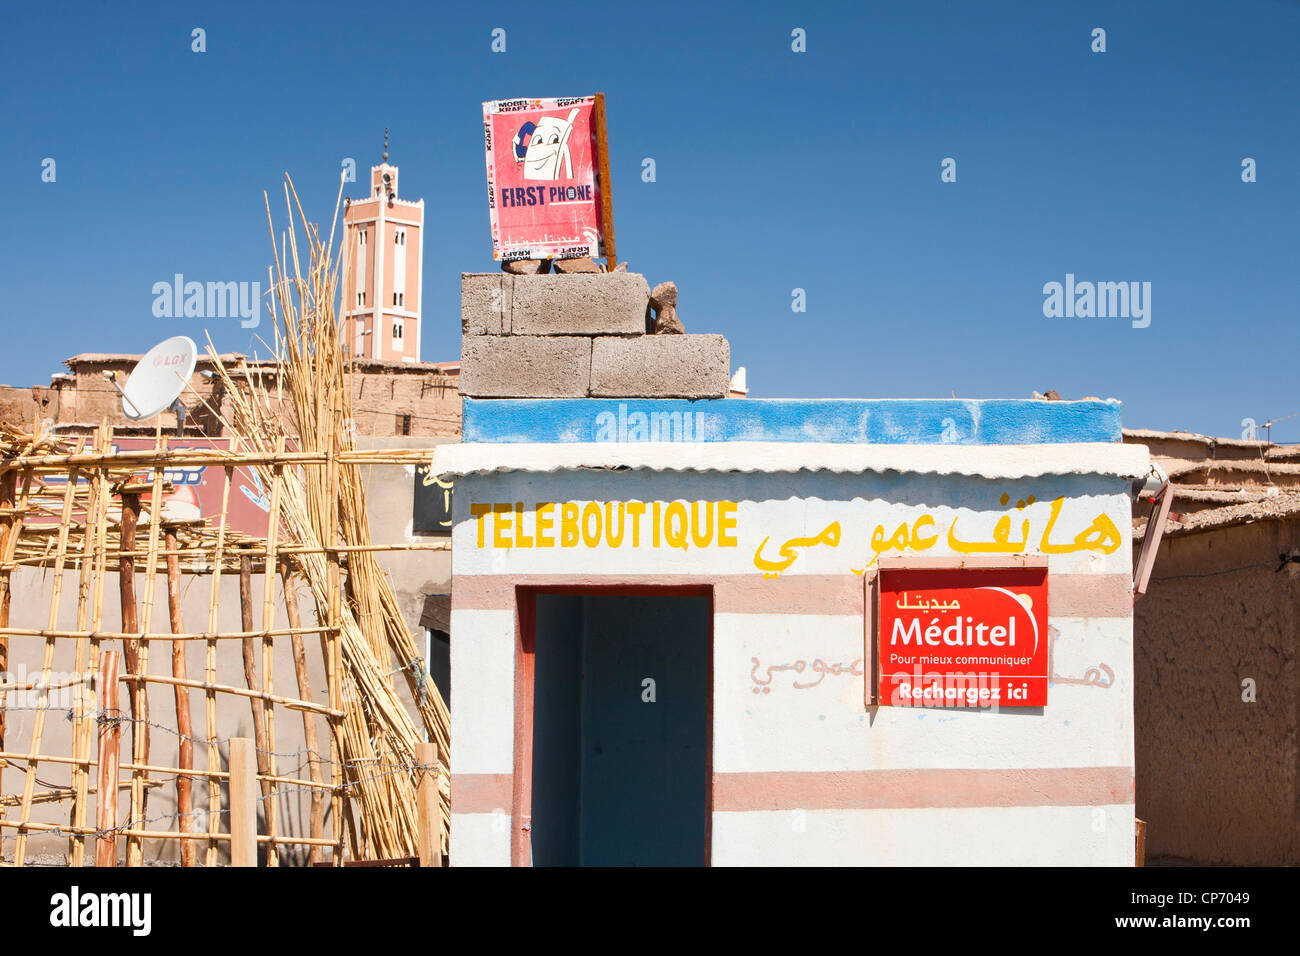 Une cabine téléphonique en Tamazight village près de Djebel Sirwa dans l'Anti Atlas montagnes du Maroc, l'Afrique du Nord. Banque D'Images